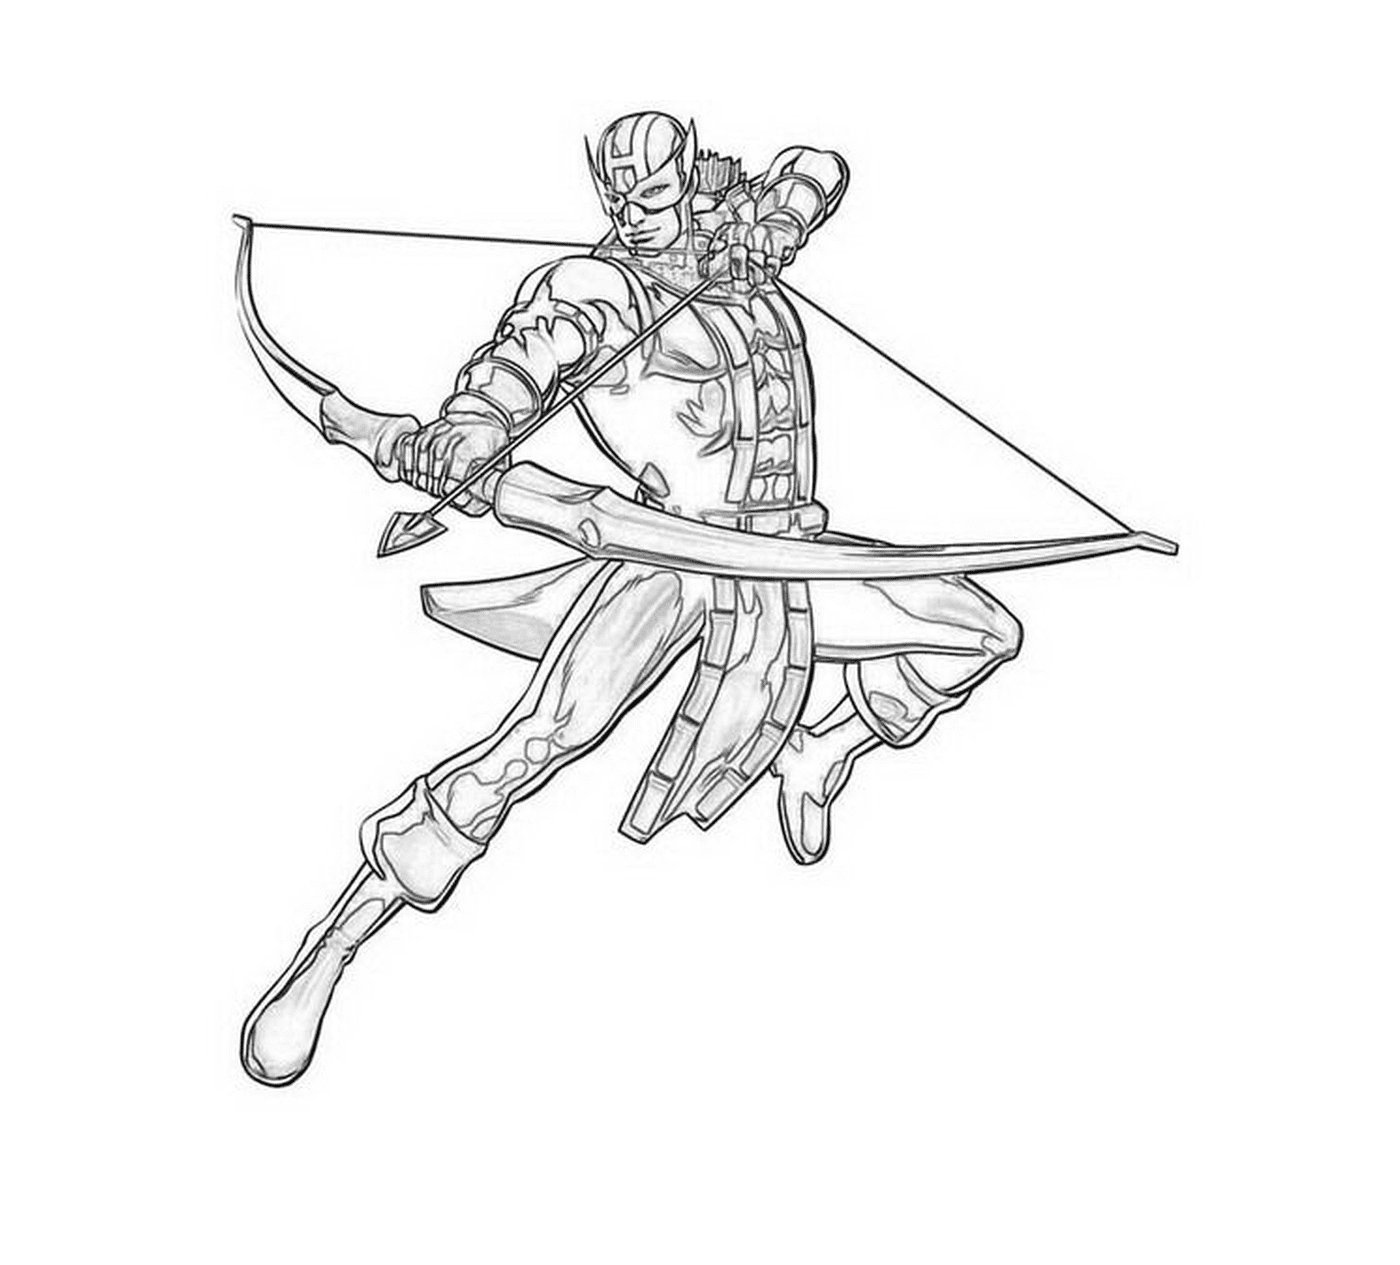  Un uomo con arco e frecce 